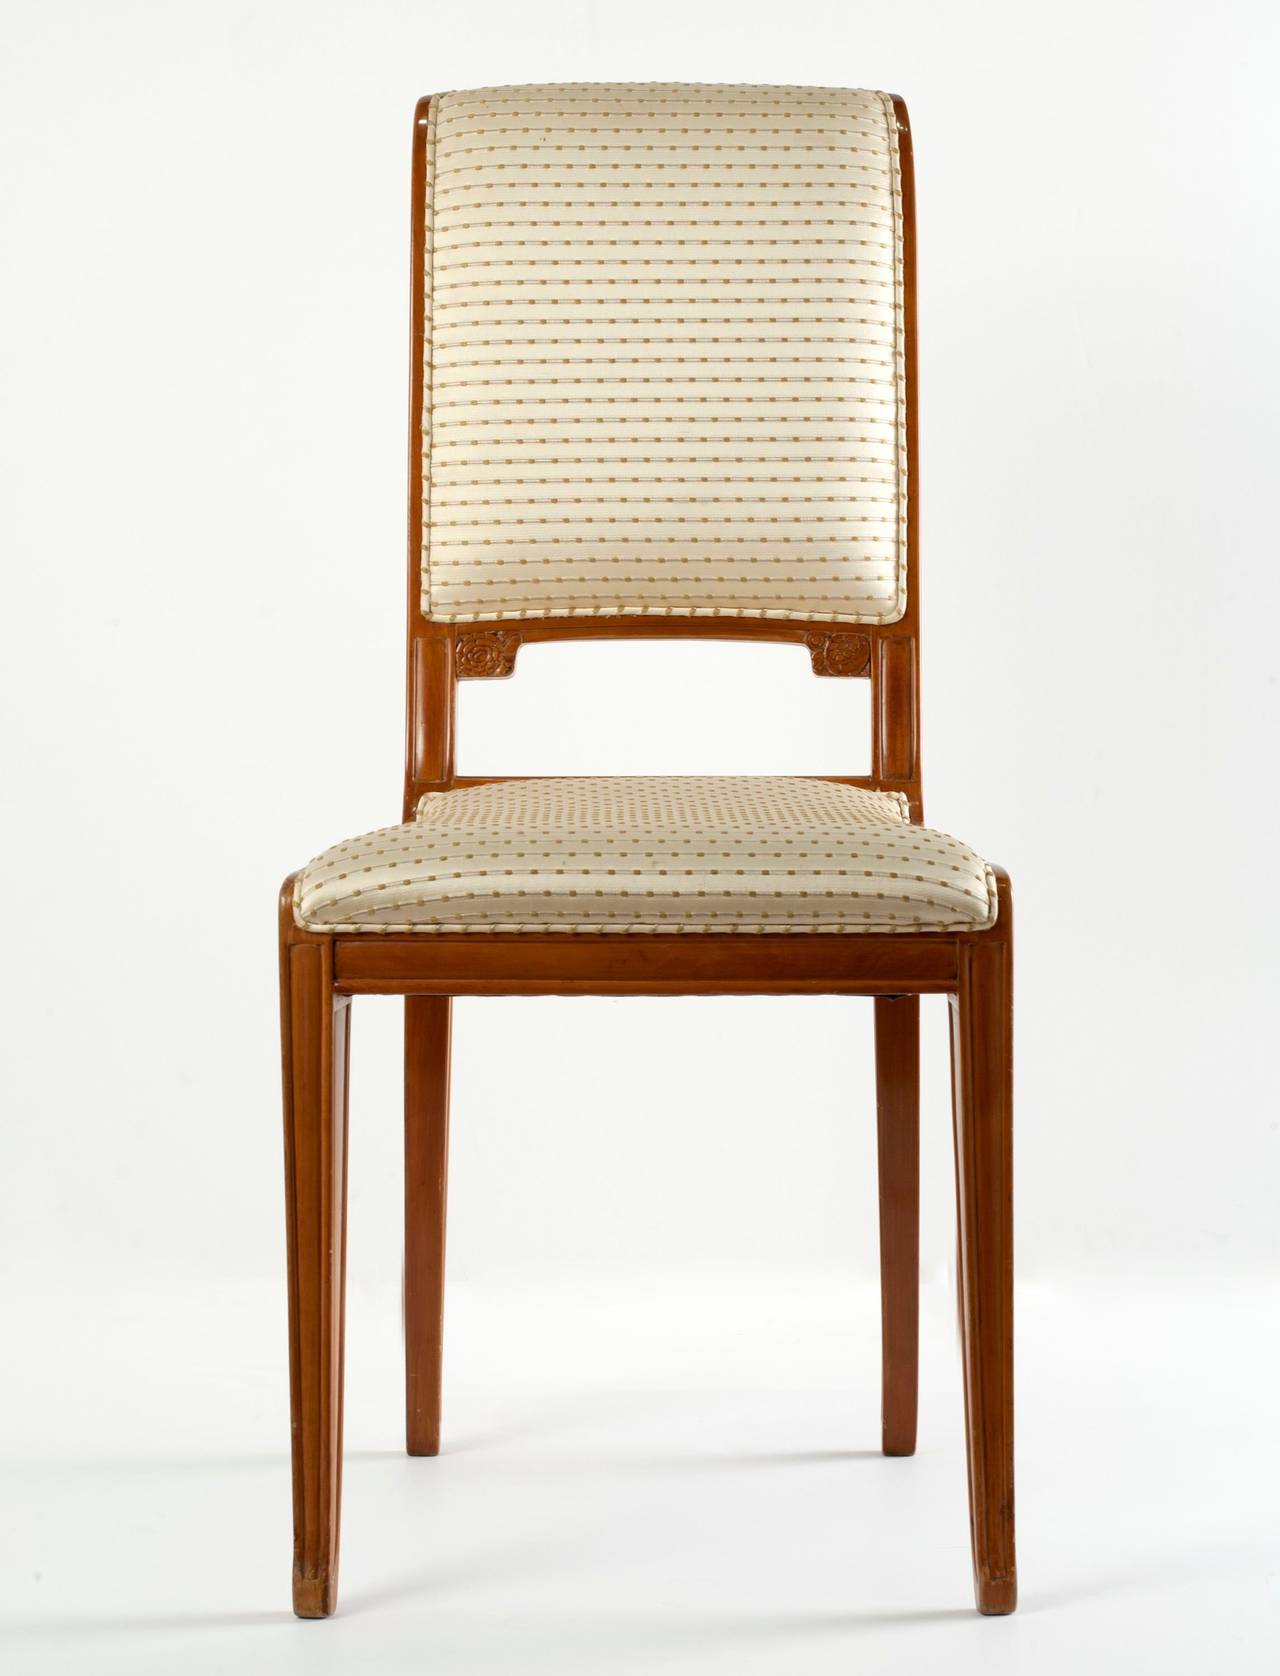 Geschnitzter Art Deco Beistellstuhl aus Obstholz von Léon Jallot.

Provenienz: Dieses Möbelstück, bestehend aus einem Paar Sesseln, einem Paar Beistellstühlen und einem passenden Couchtisch, wurde im November 1922 direkt von Madame Yvonne Zunz bei